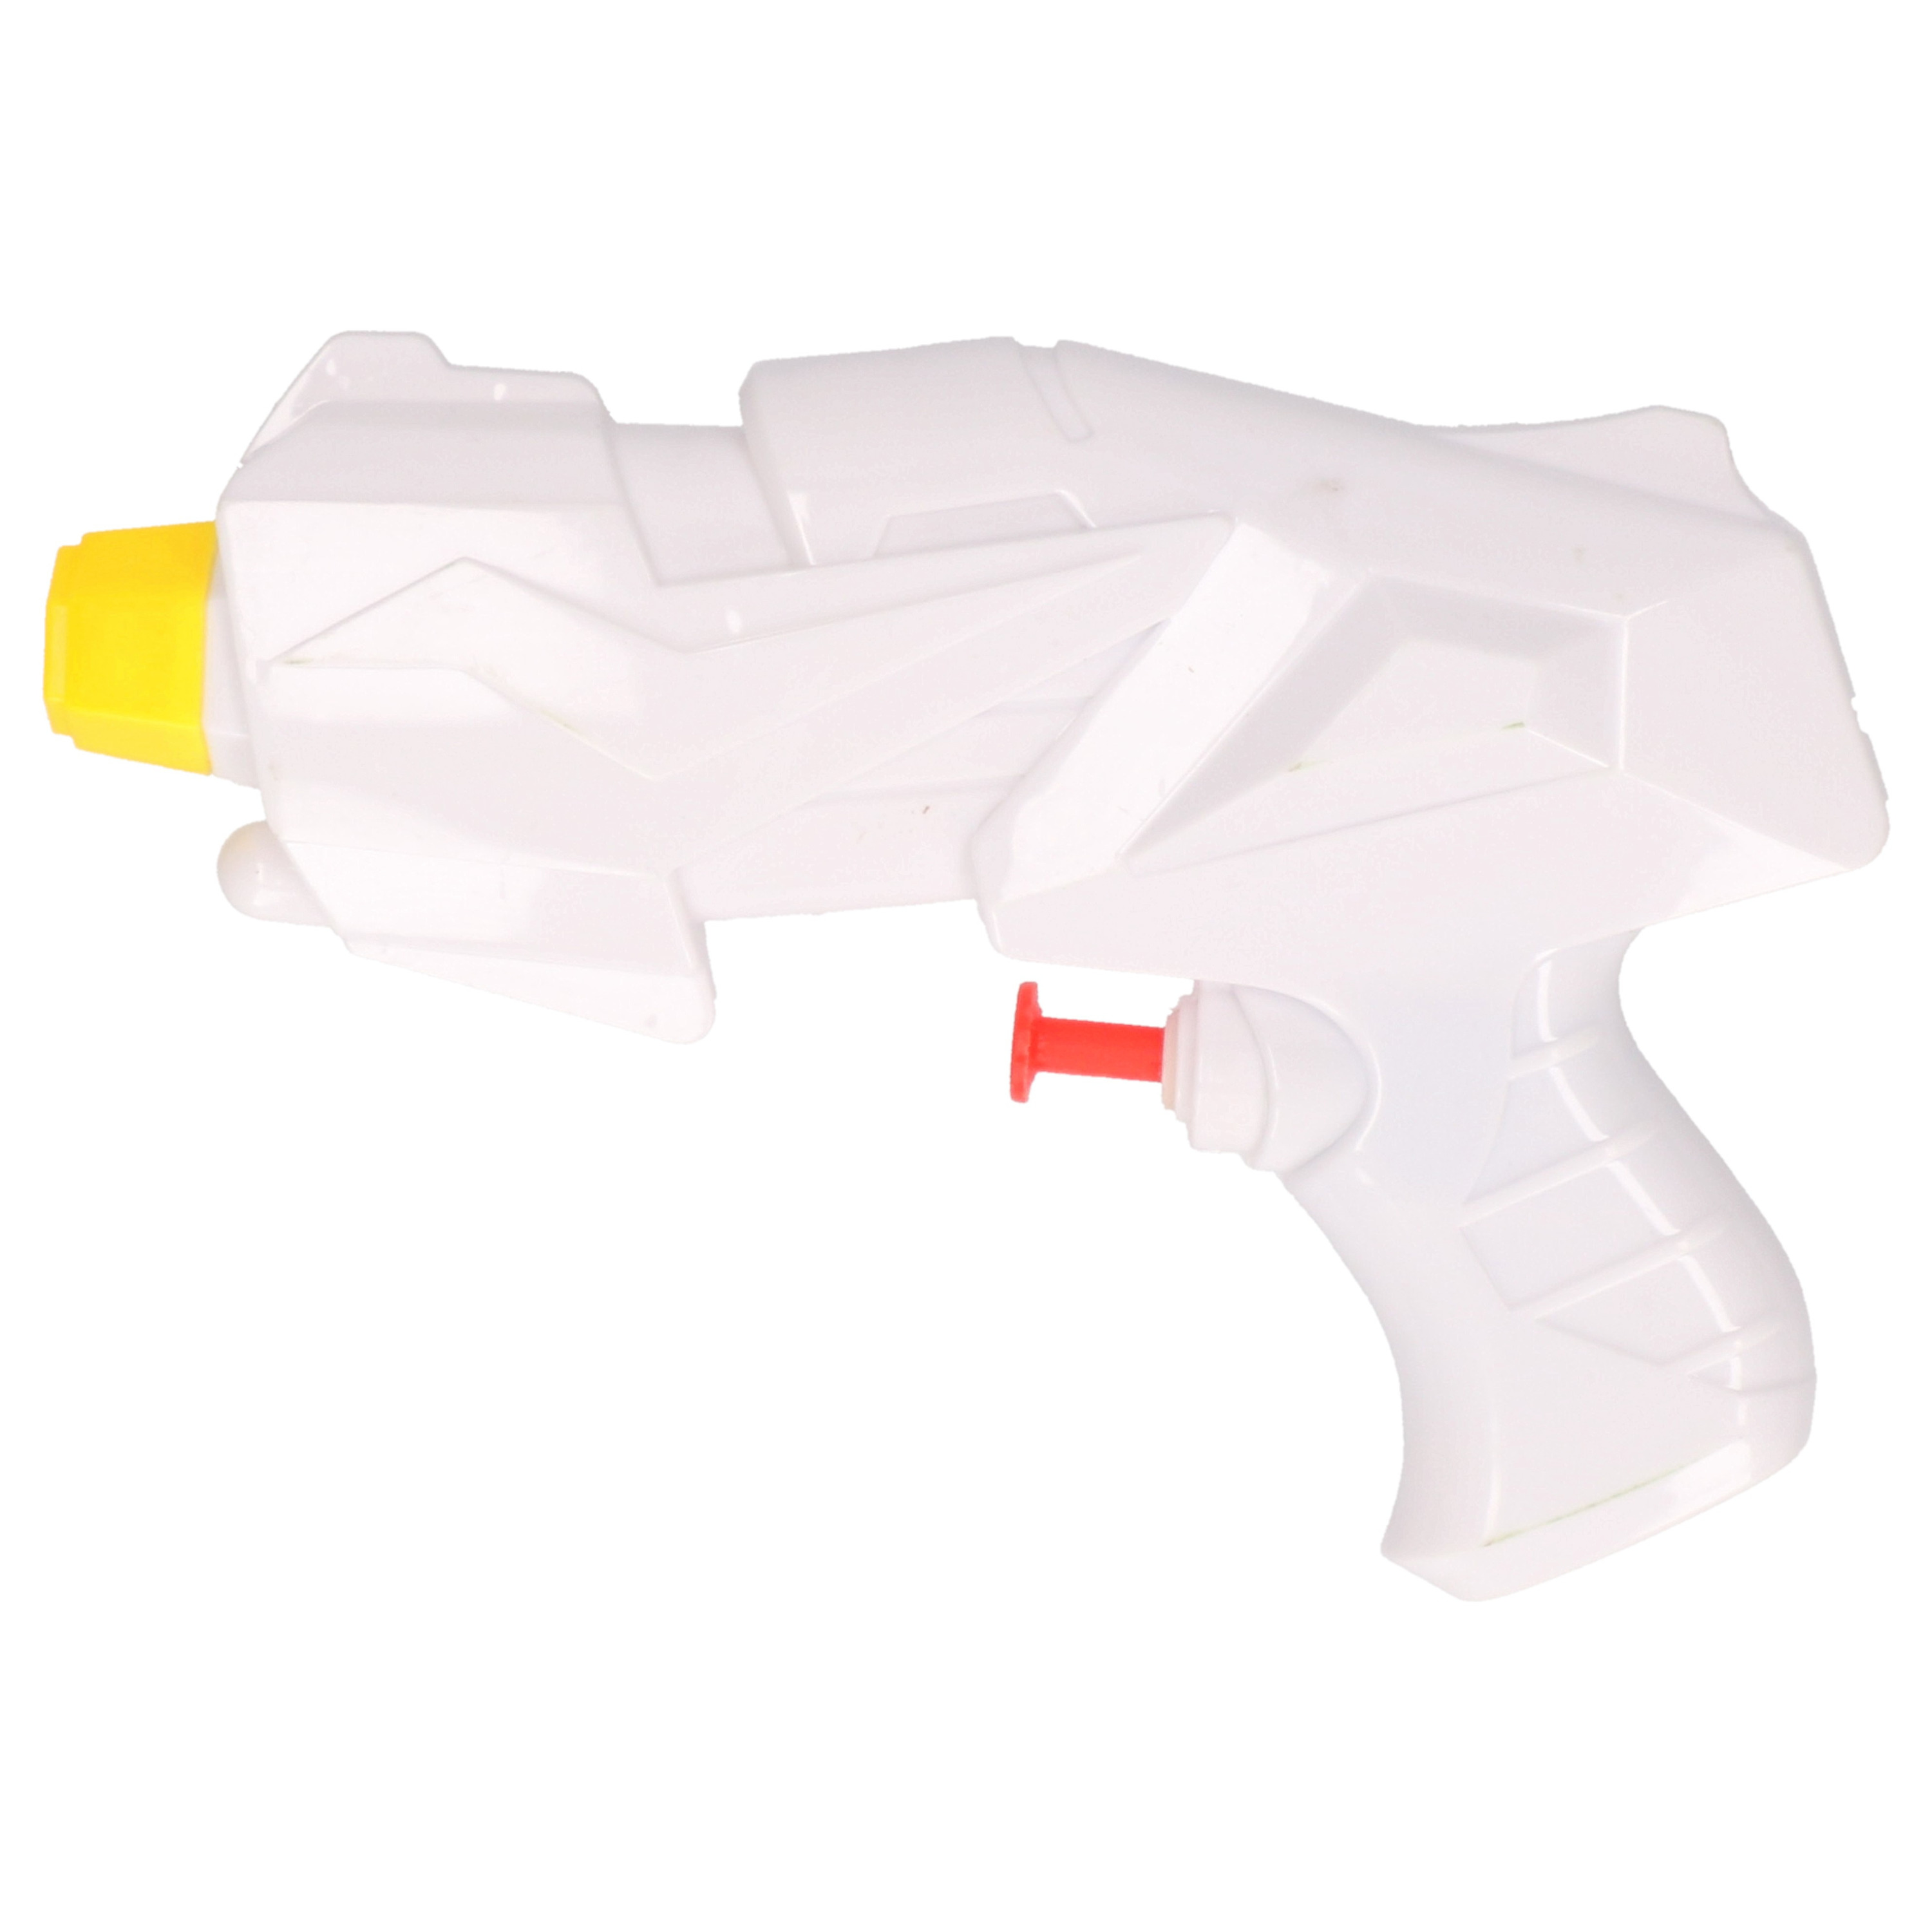 1x Klein kinderspeelgoed waterpistooltjes-waterpistolen 15 cm wit